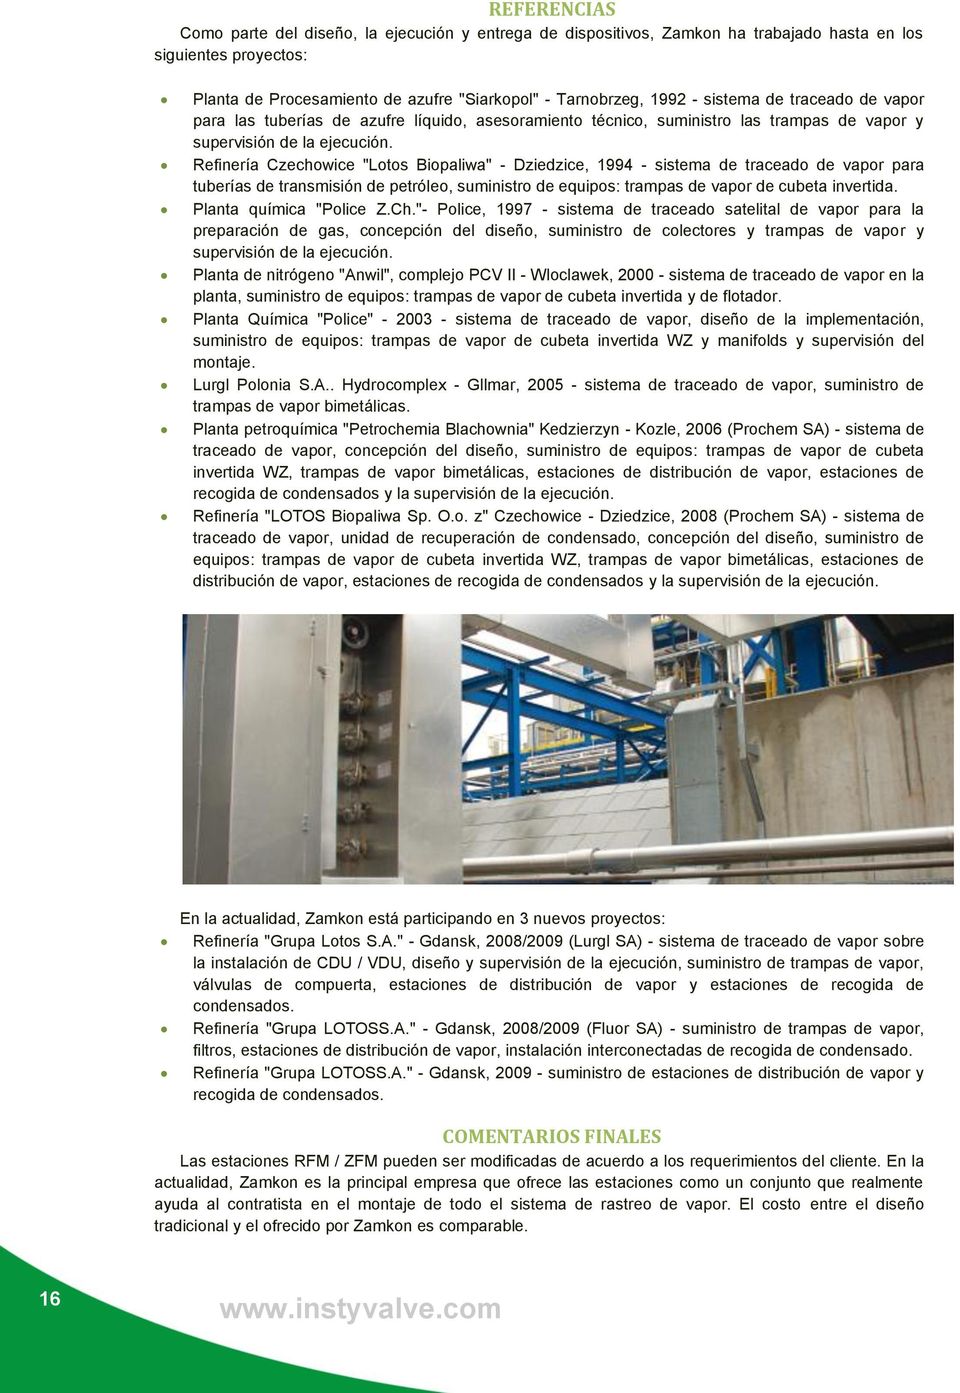 Refinería Czechowice "Lotos Biopaliwa" - Dziedzice, 1994 - sistema de traceado de vapor para tuberías de transmisión de petróleo, suministro de equipos: trampas de vapor de cubeta invertida.